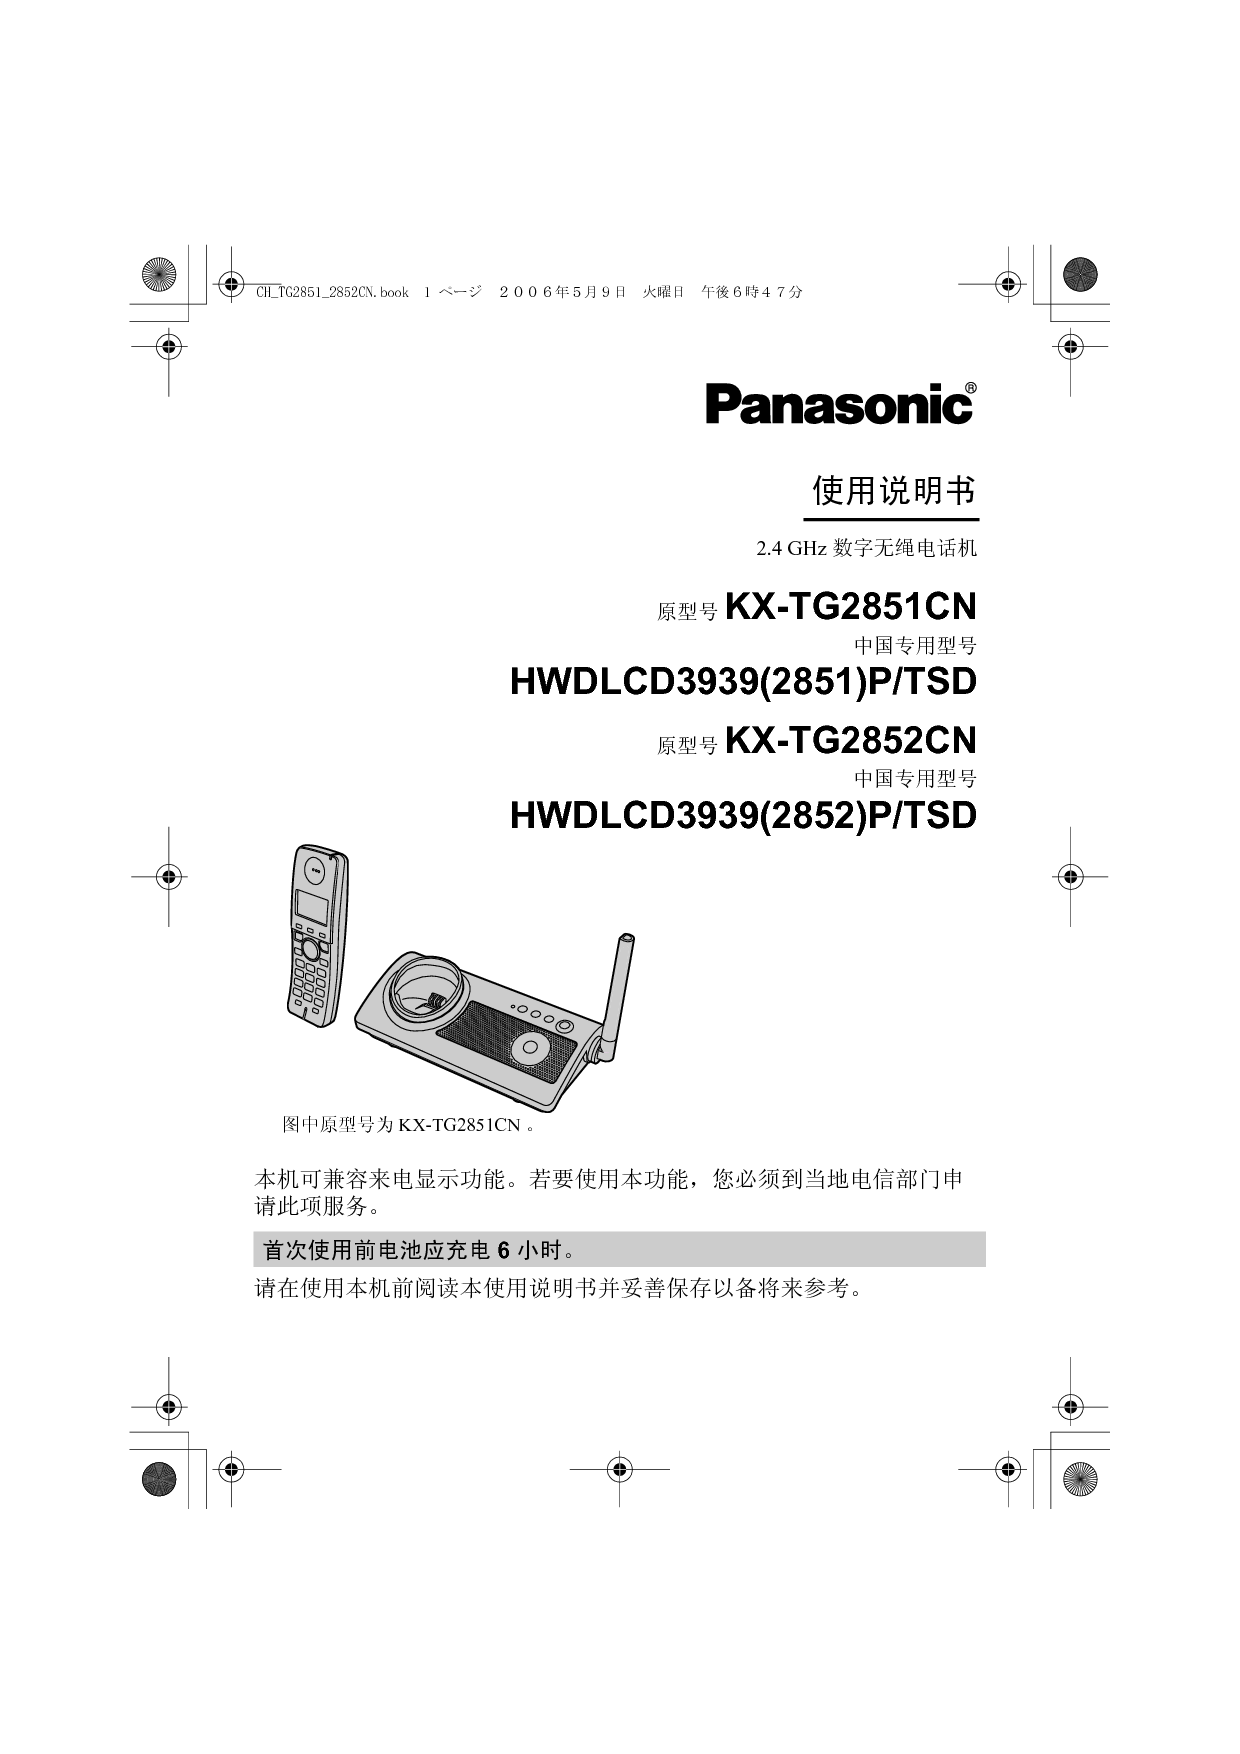 松下 Panasonic HWDLCD3939(2851)P/TSD, KX-TG2851CN 说明书 封面